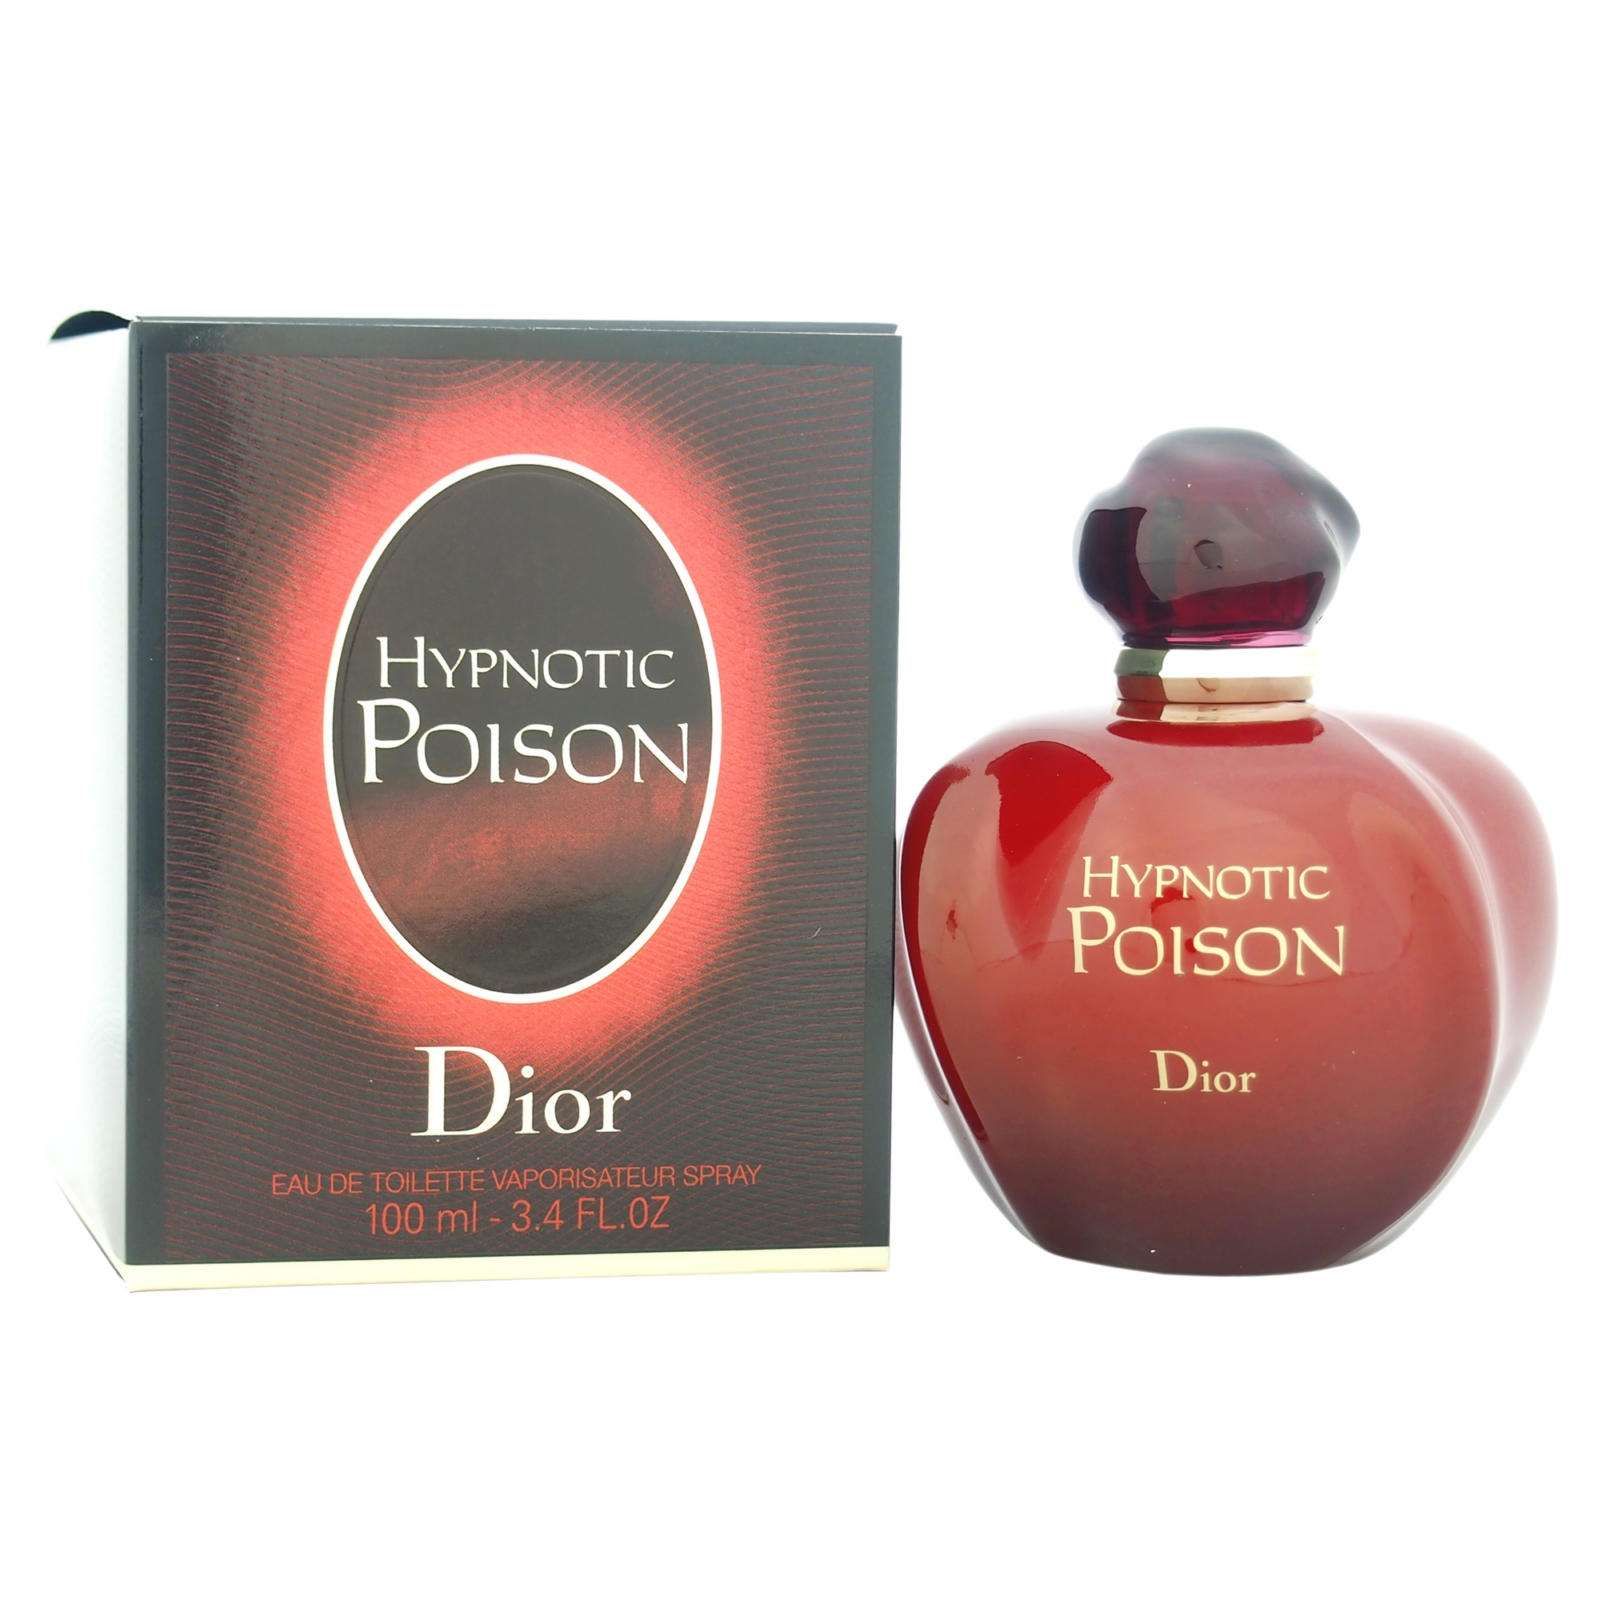 hypnotic poison by christian dior for women 3.4 oz eau de toilette spray